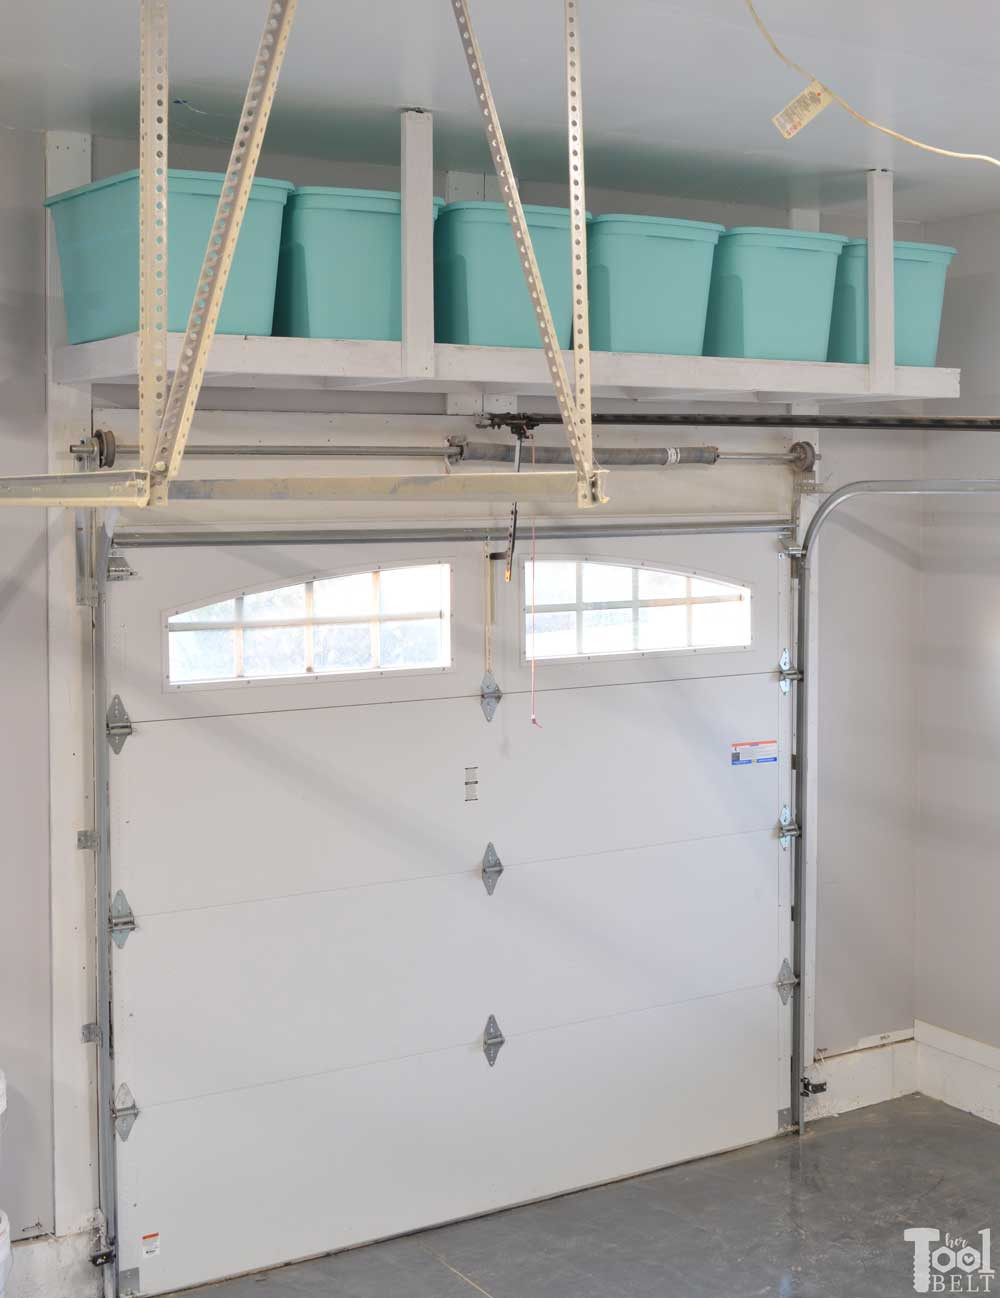 DIY Overhead Garage Storage Plans
 Overhead Garage Storage Shelf Her Tool Belt